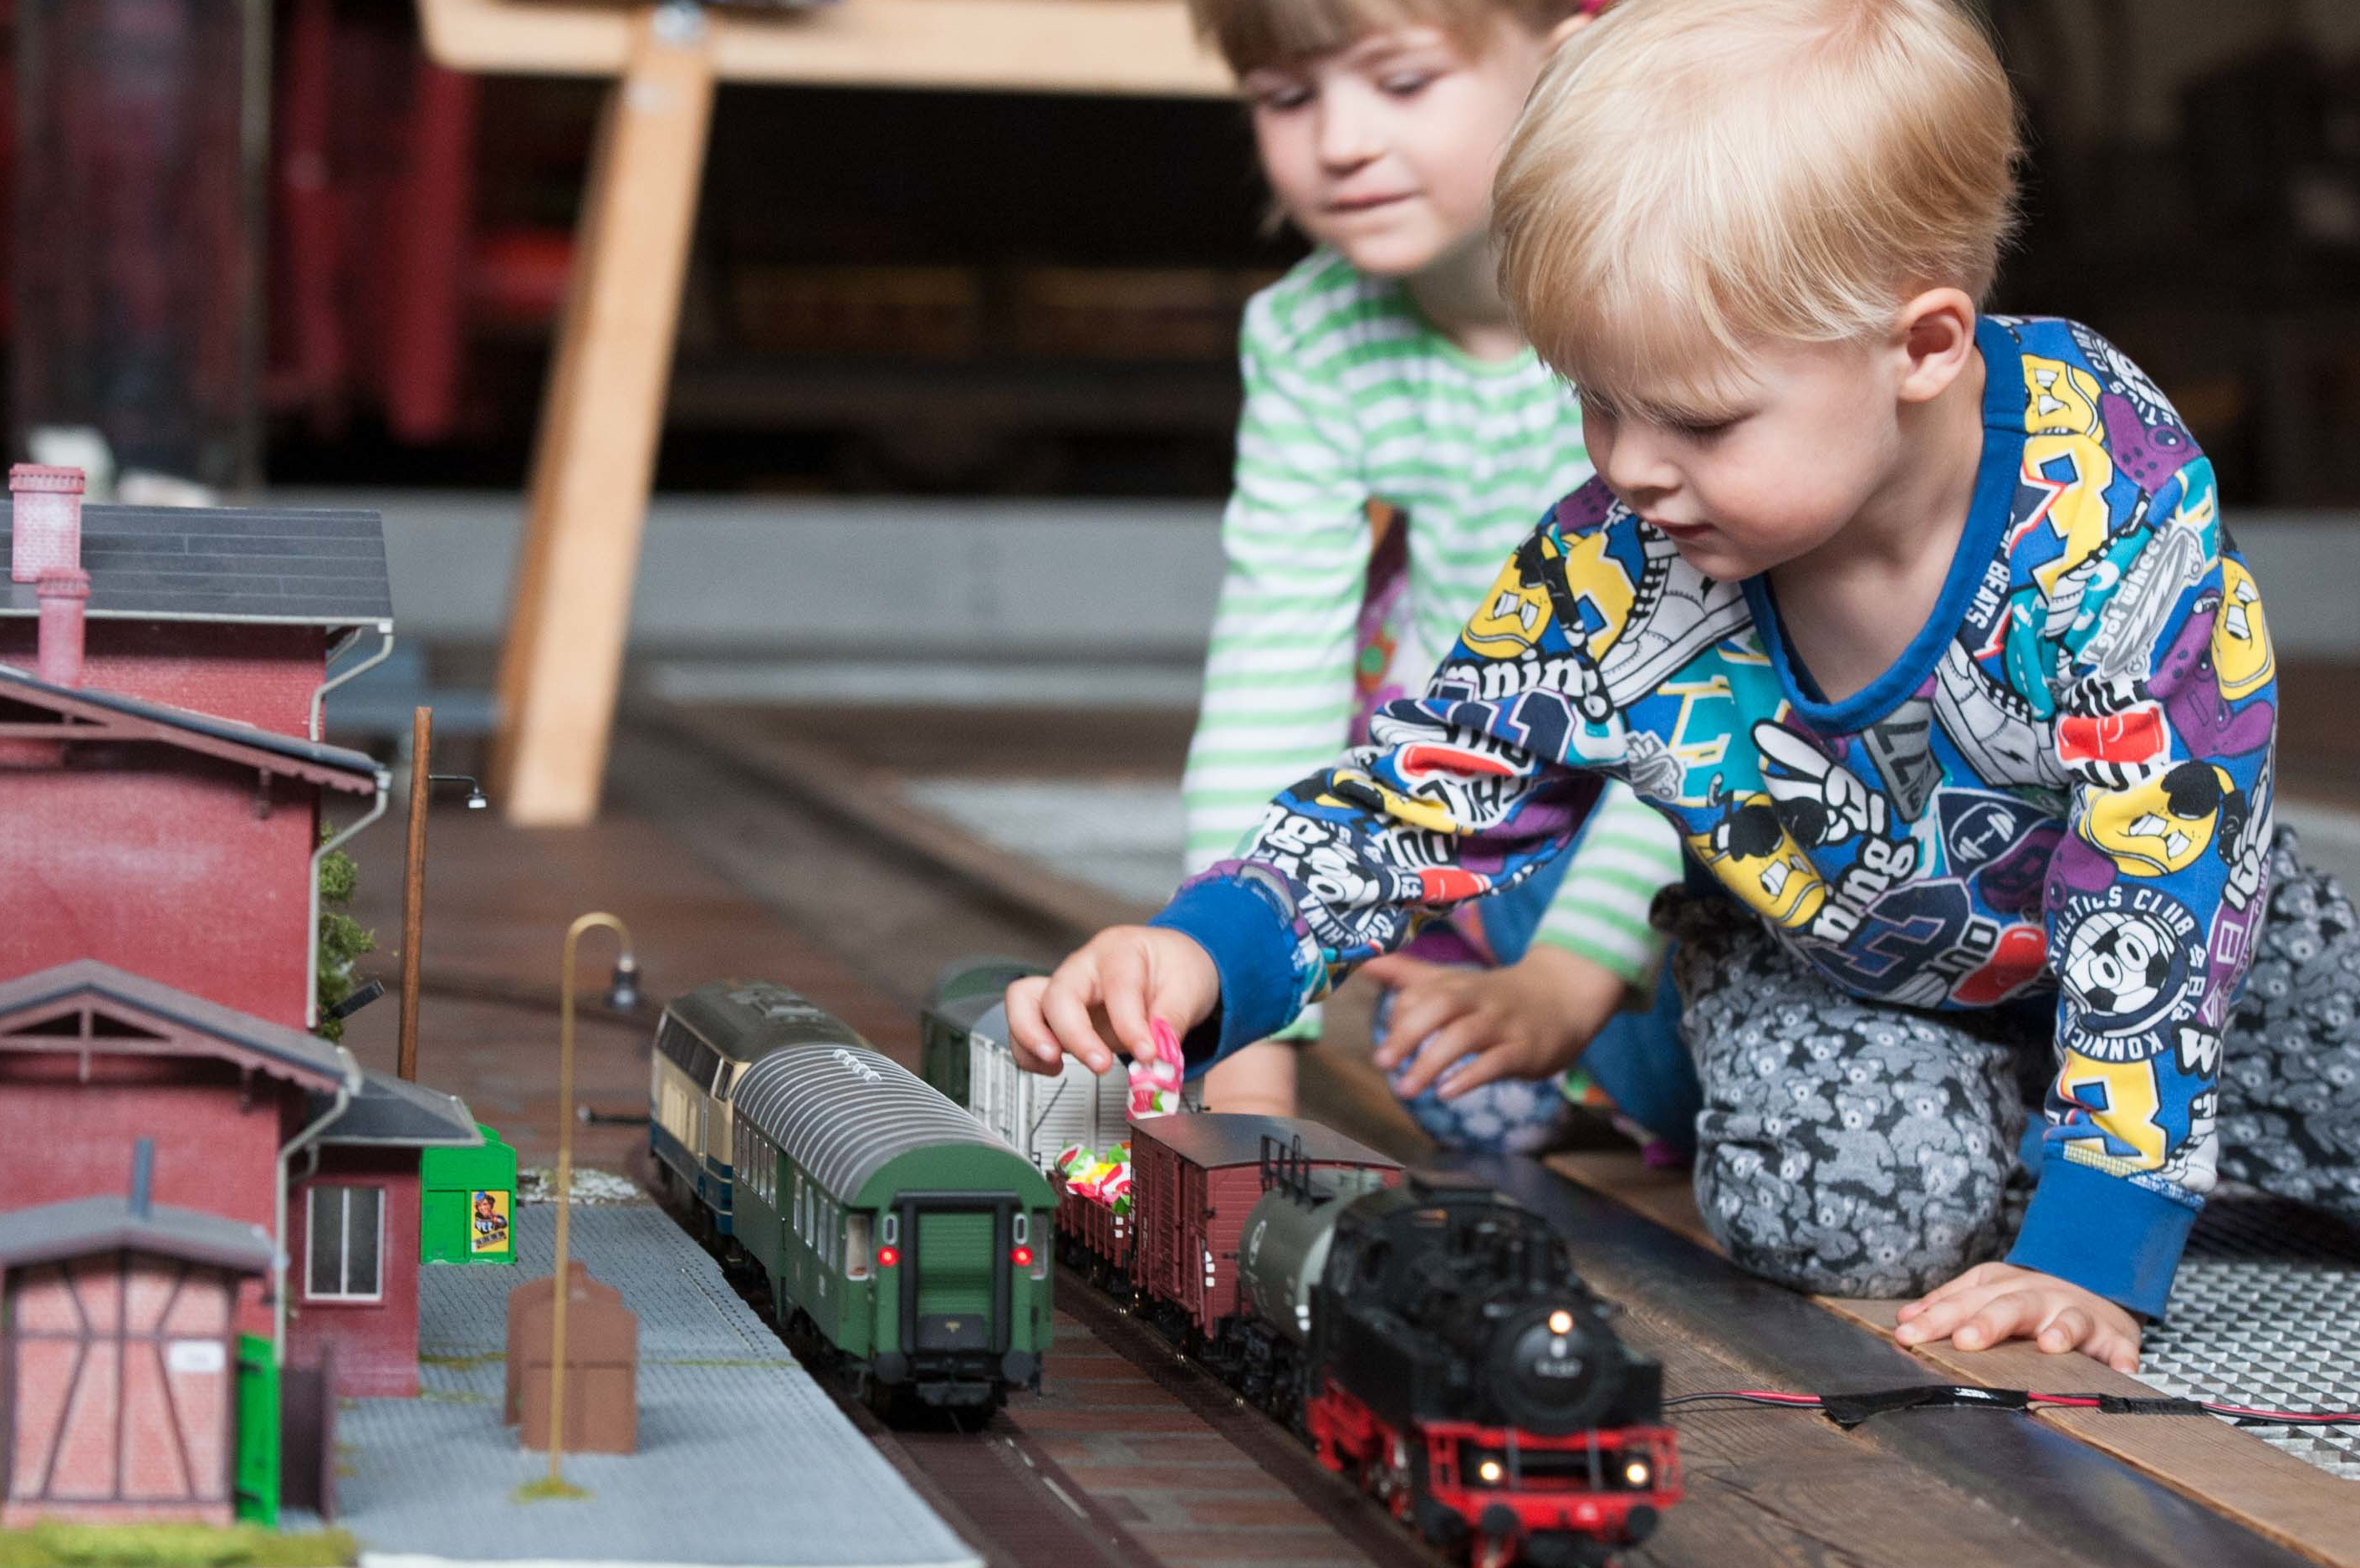 Zwei Kinder sitzen neben einer Spur-0-Modelleisenbahn auf einem Teppich. Auf den Gleisen stehen eine schwarz-rote Lokomotive und mehrere Anhänger. Eines der Kinder belädt einen offenen Anhänger mit kleinen, buntverpackten Süßigkeiten.